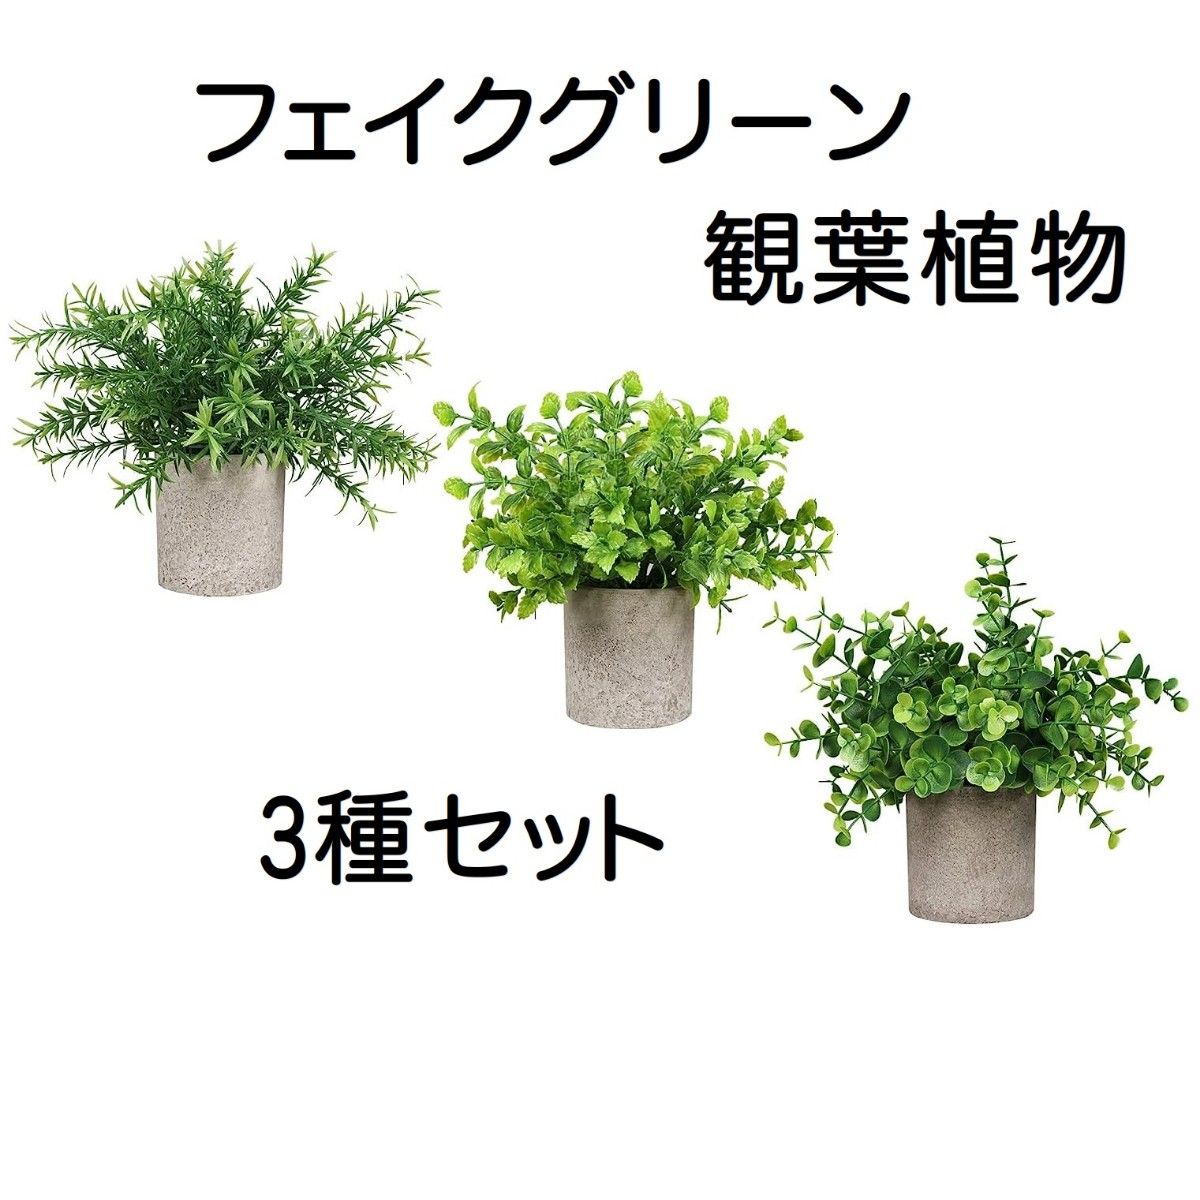 フェイクグリーン 観葉植物 人工観葉植物 3個セット